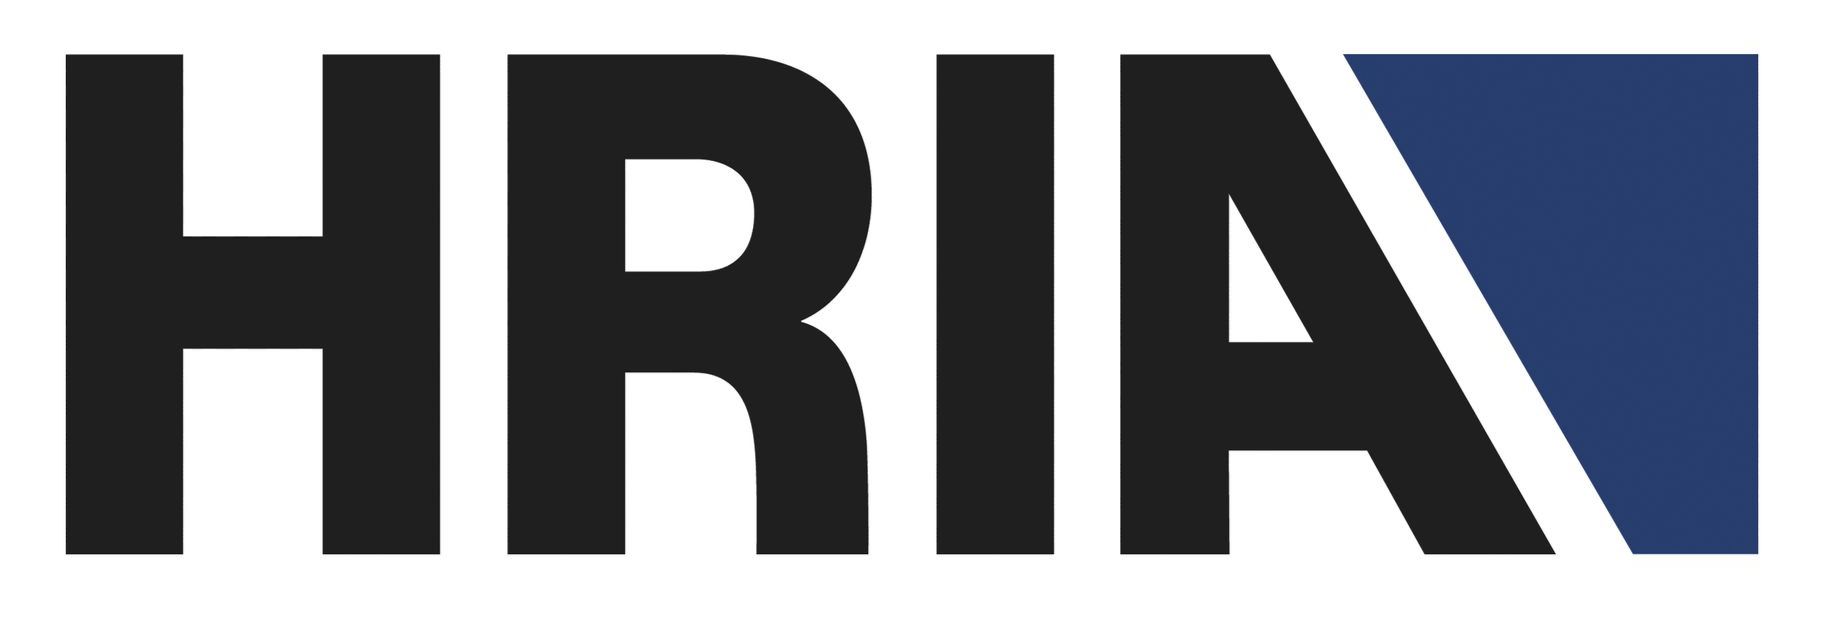 HRIA Logo